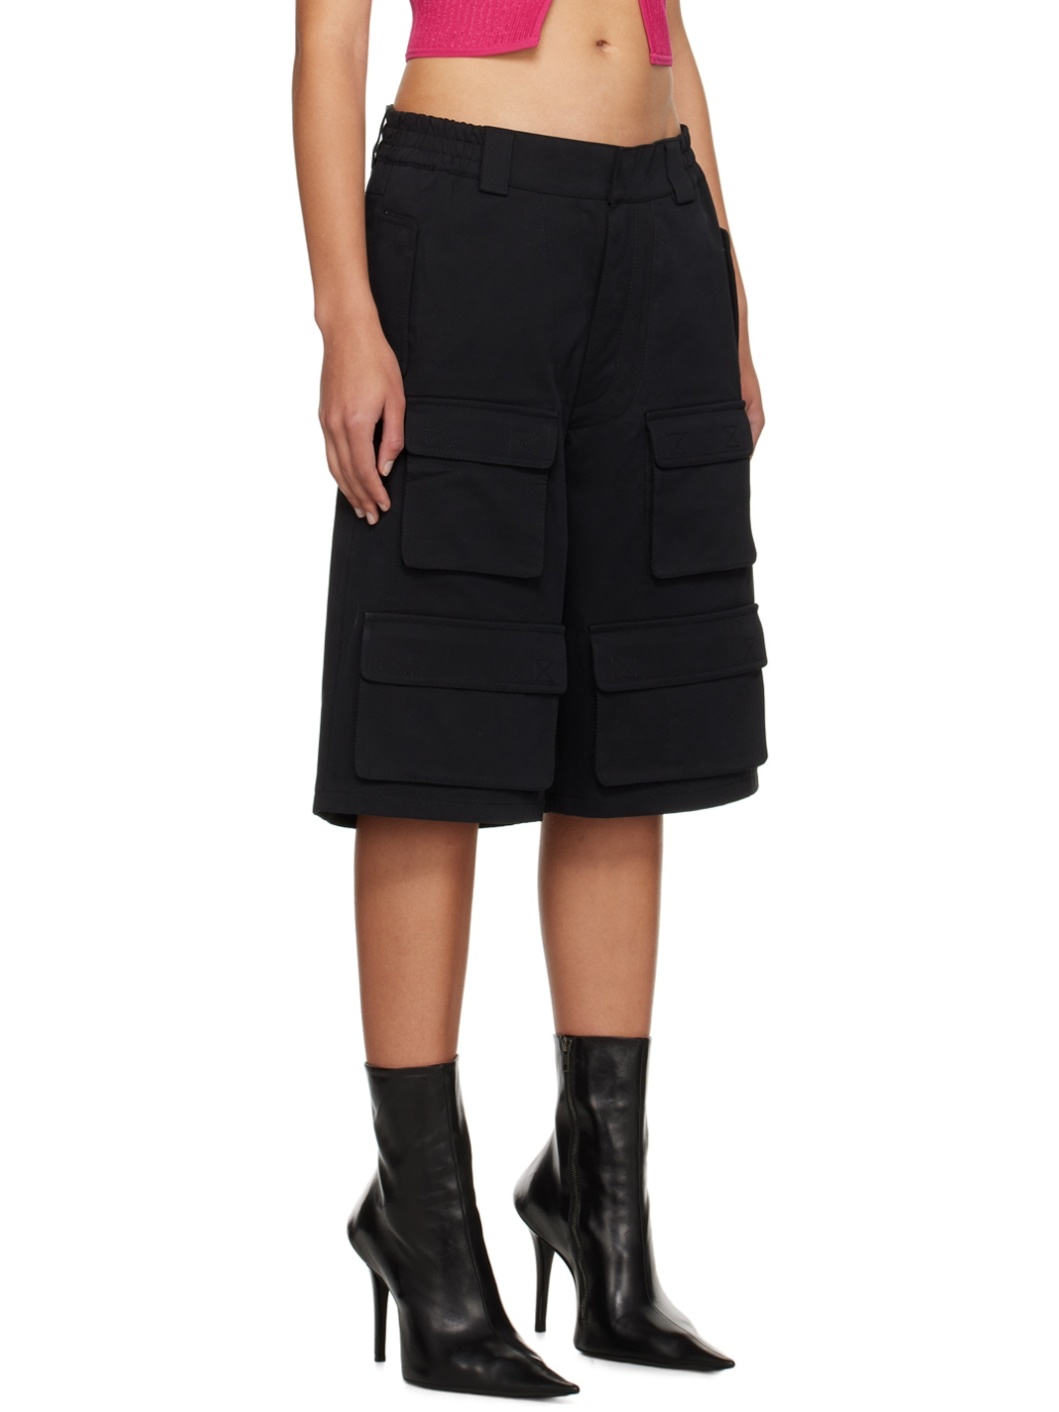 Black Four-Pocket Cargo Shorts - 2